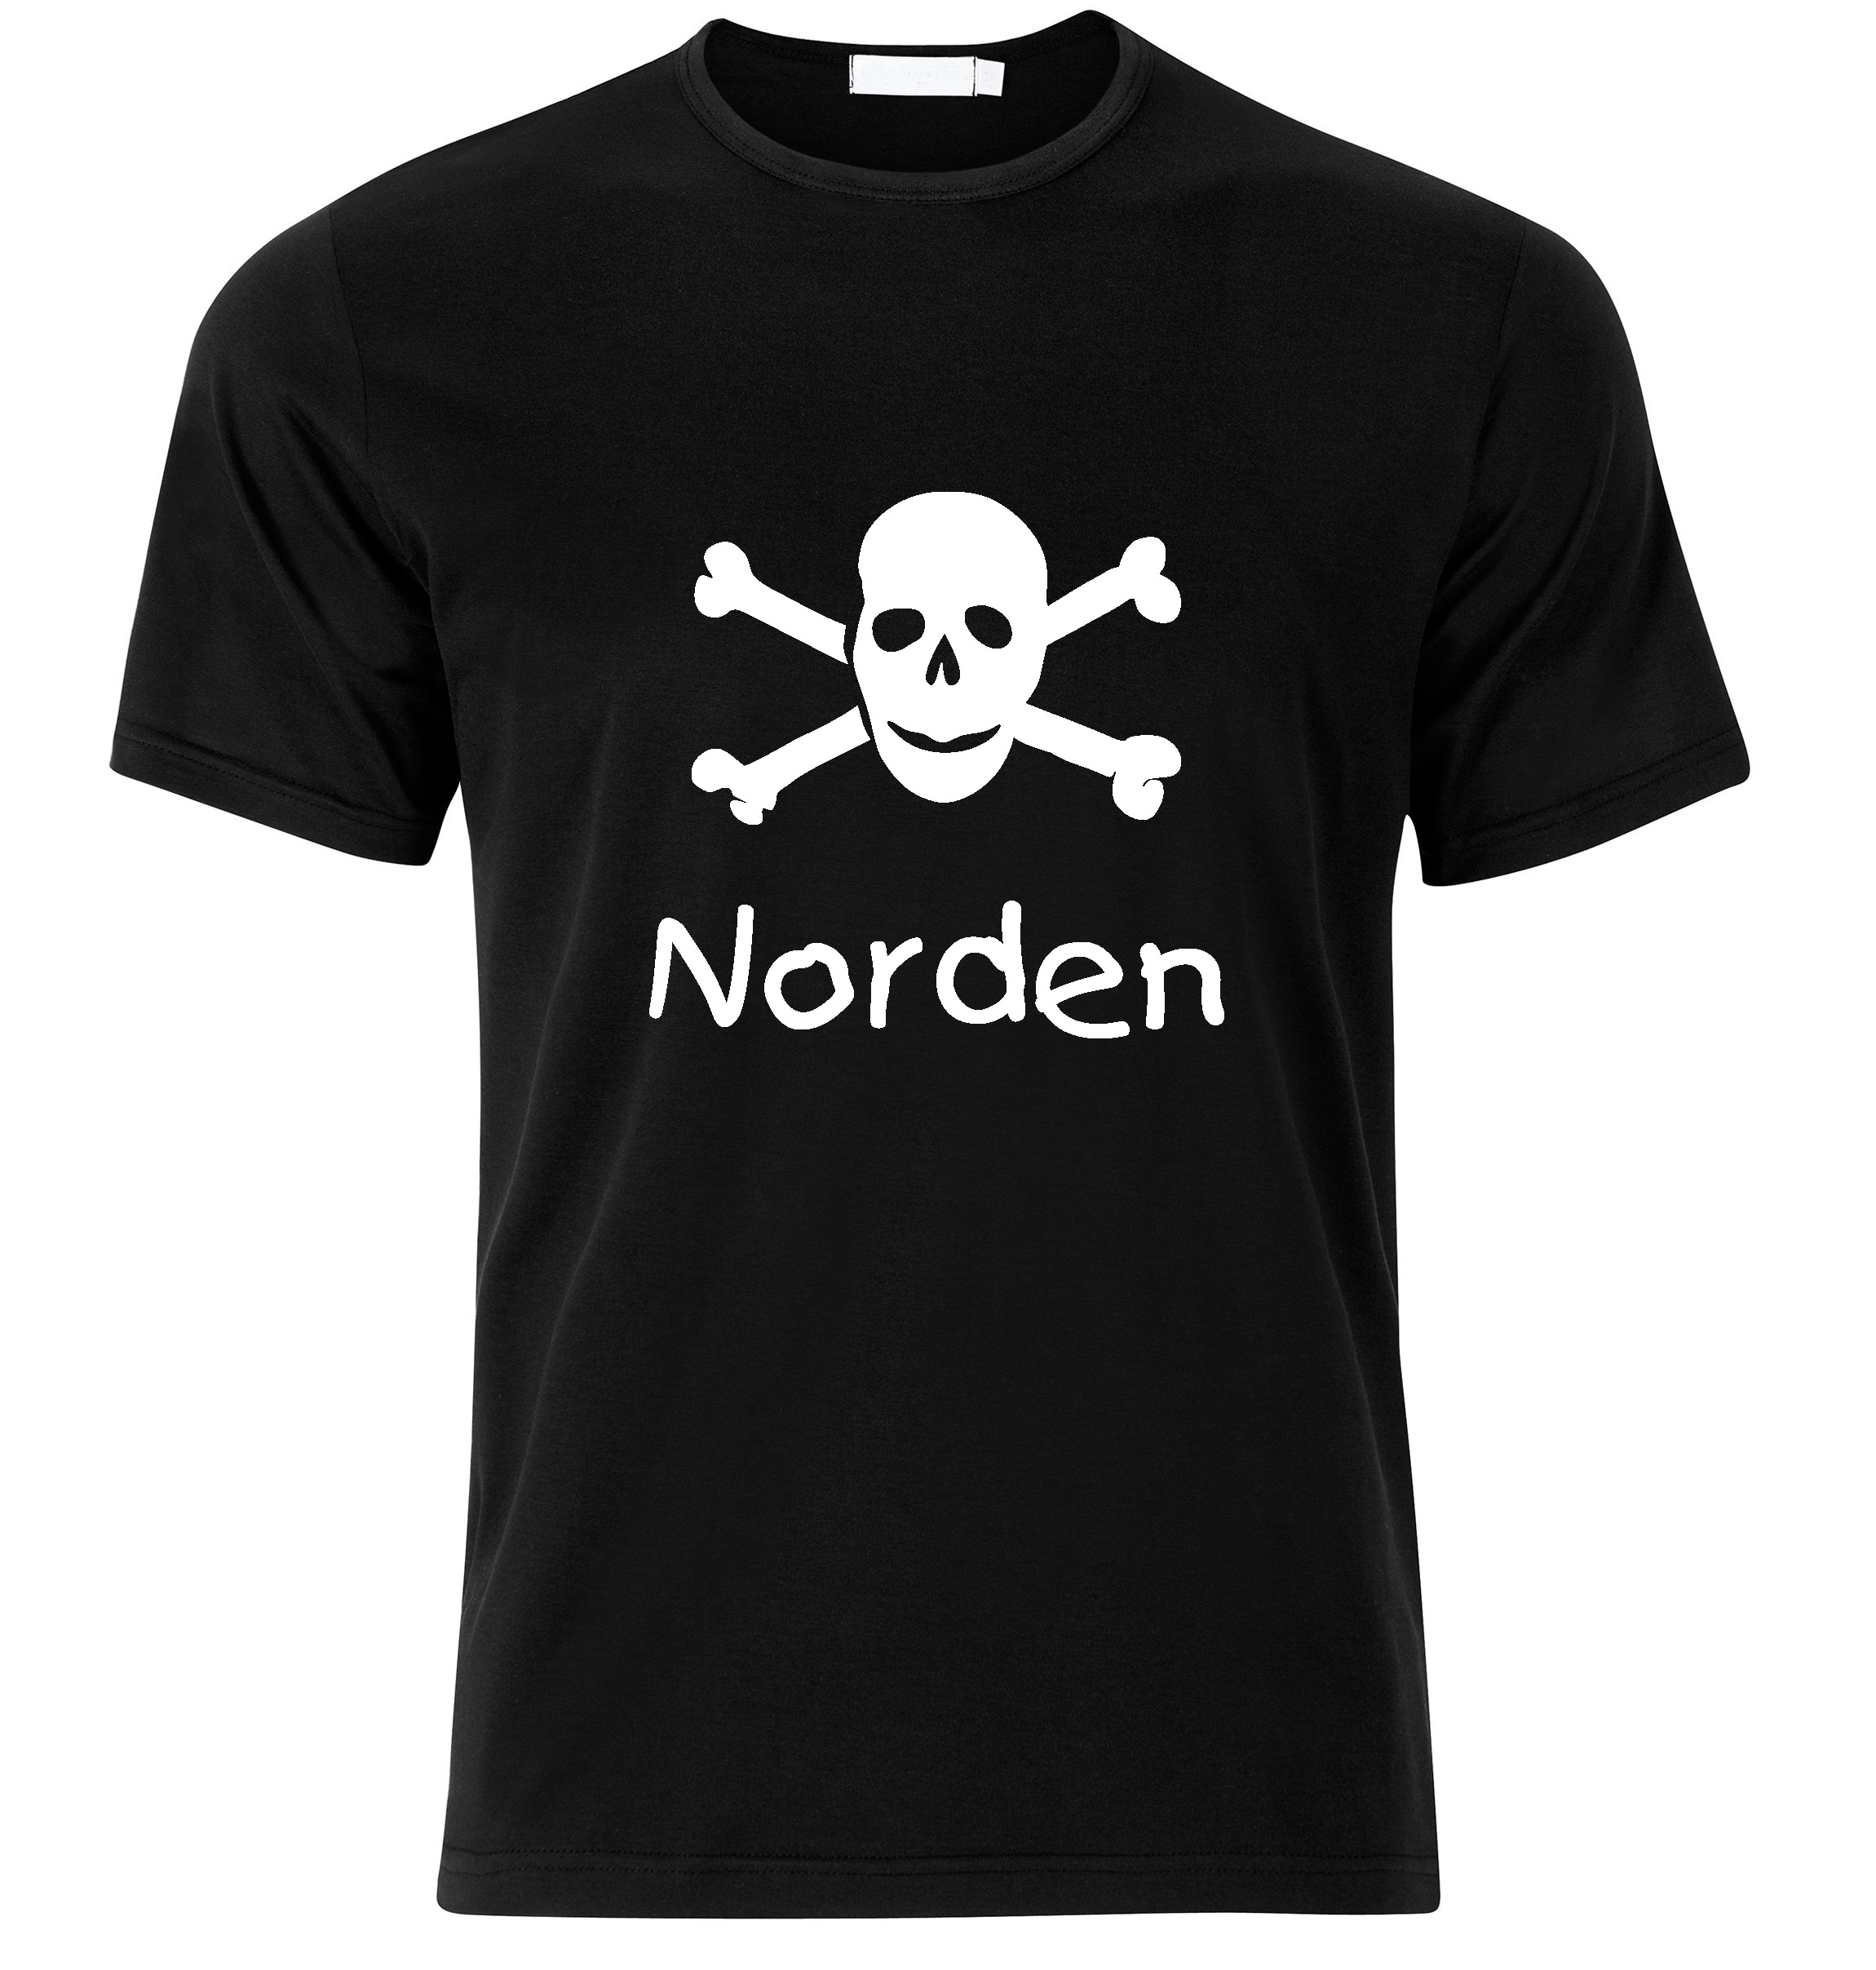 T-Shirt Norden Jolly Roger, Totenkopf